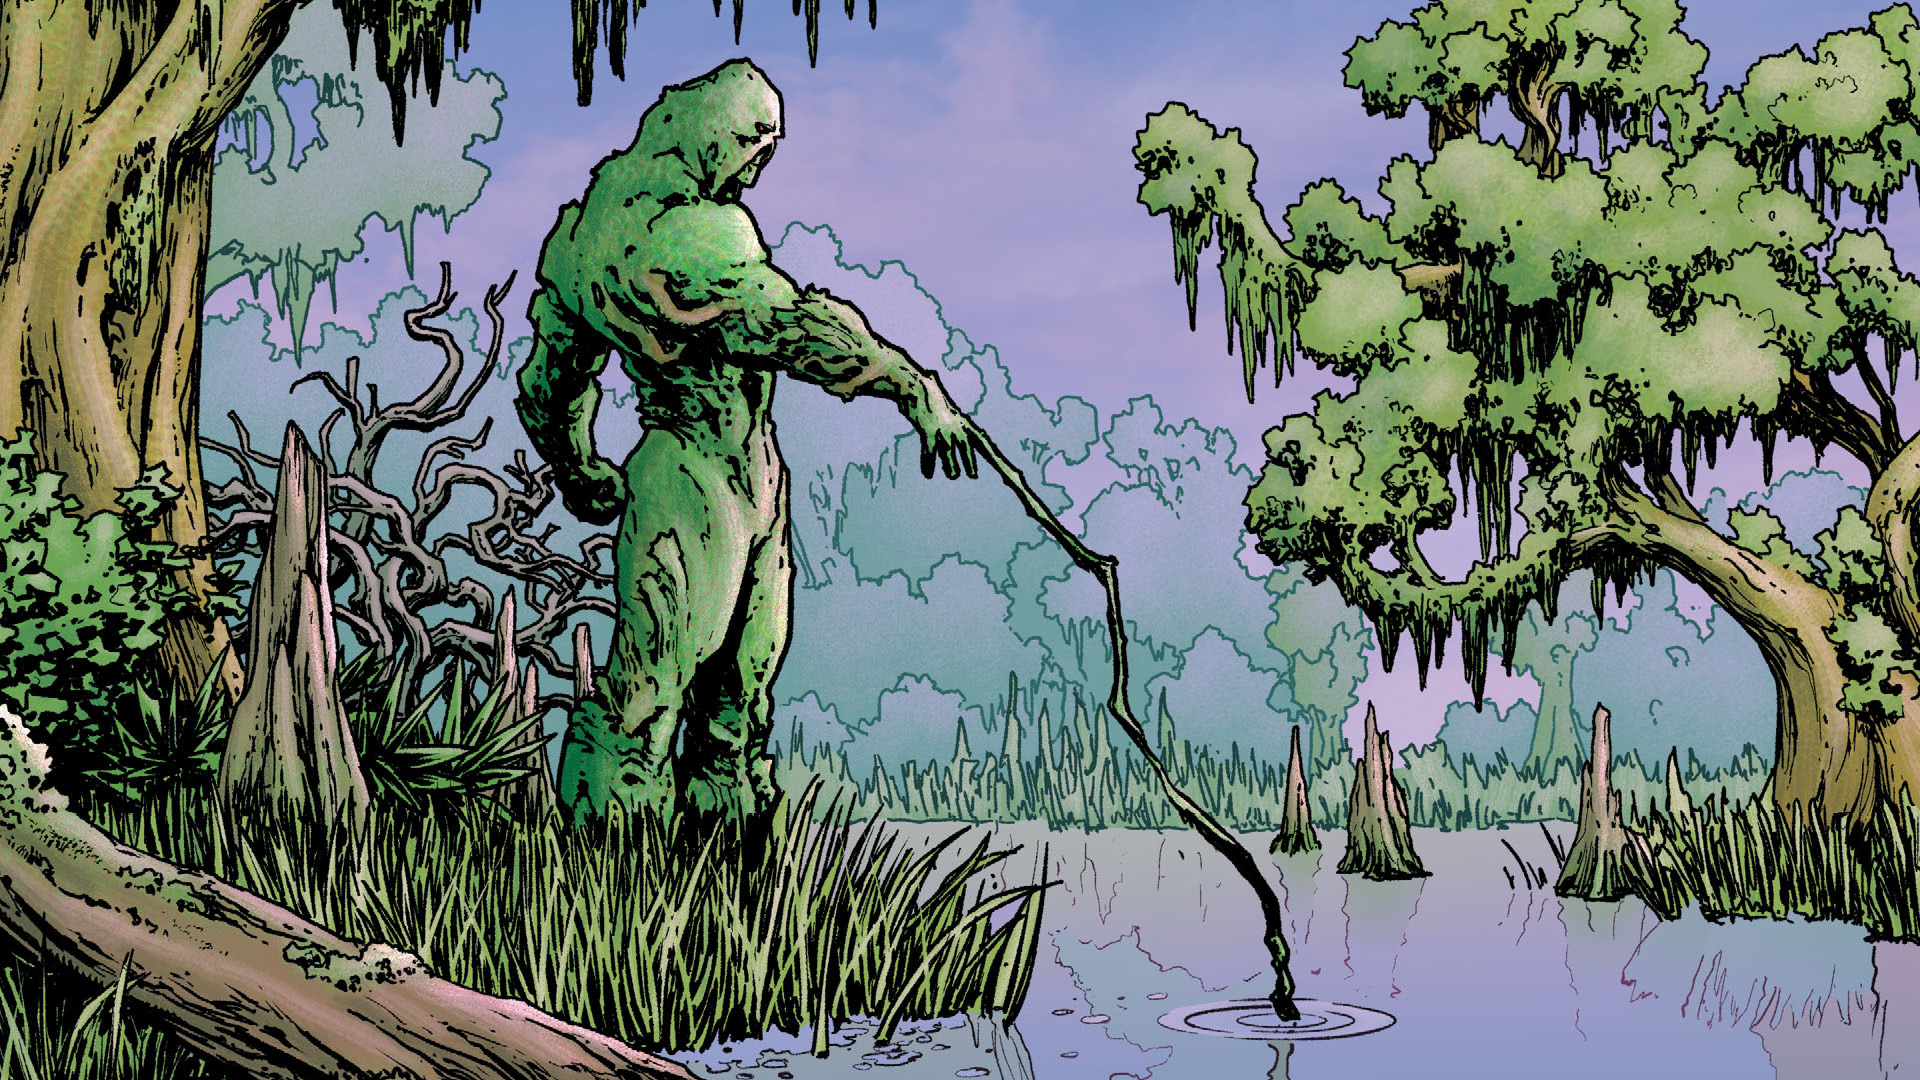 Swamp Thing  desktop Images